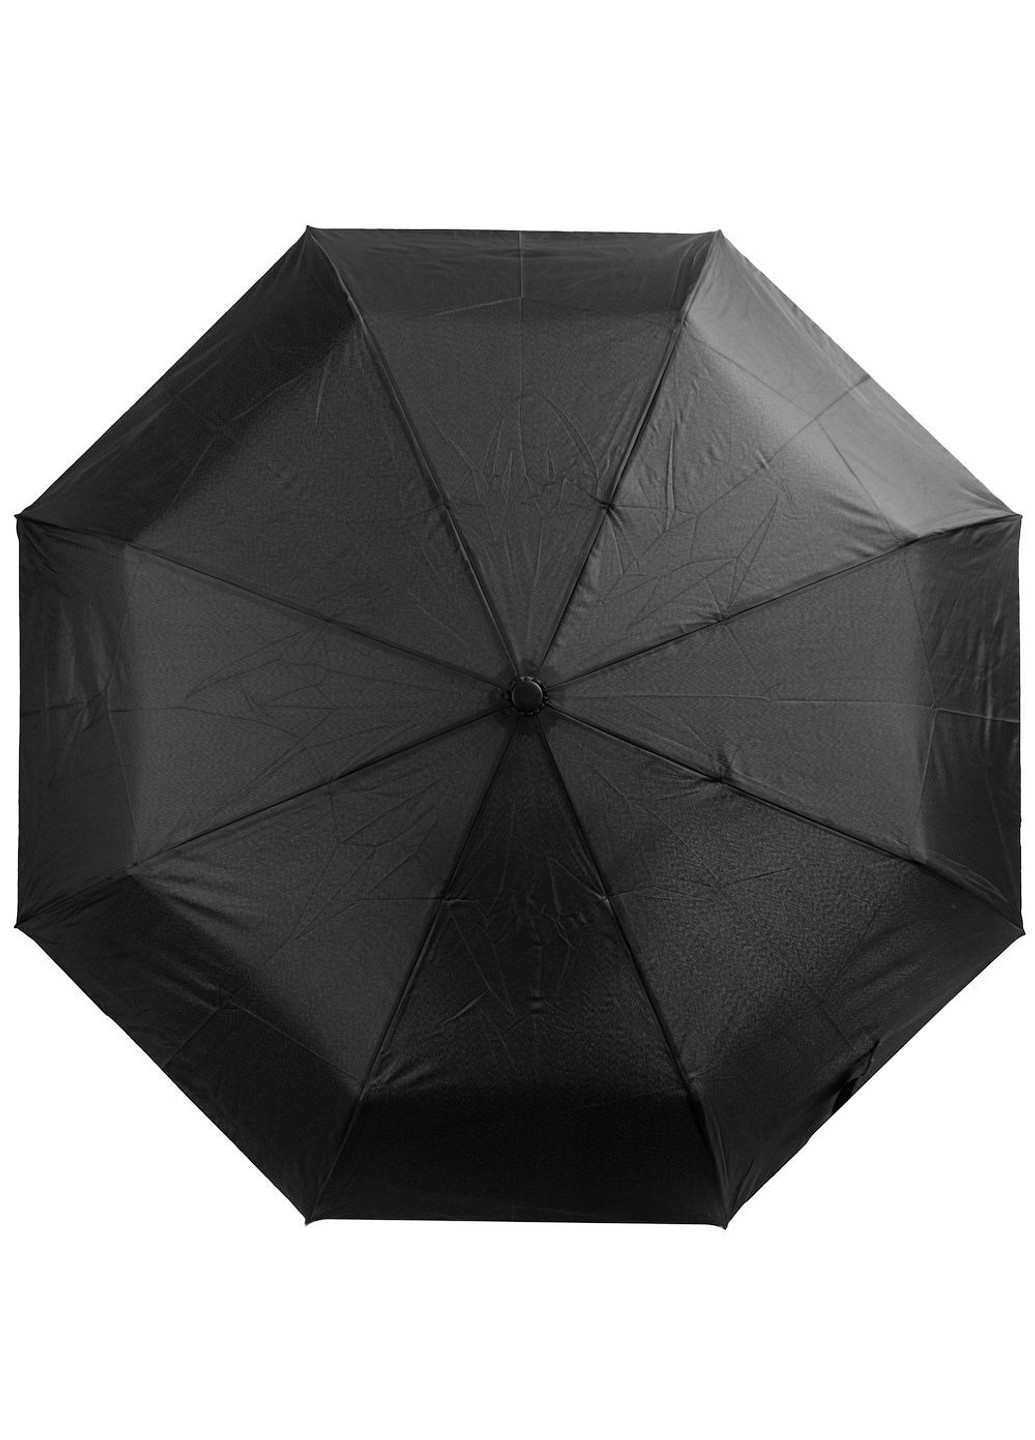 Чоловіча механічна парасолькаZAR3110 Art rain (262976926)